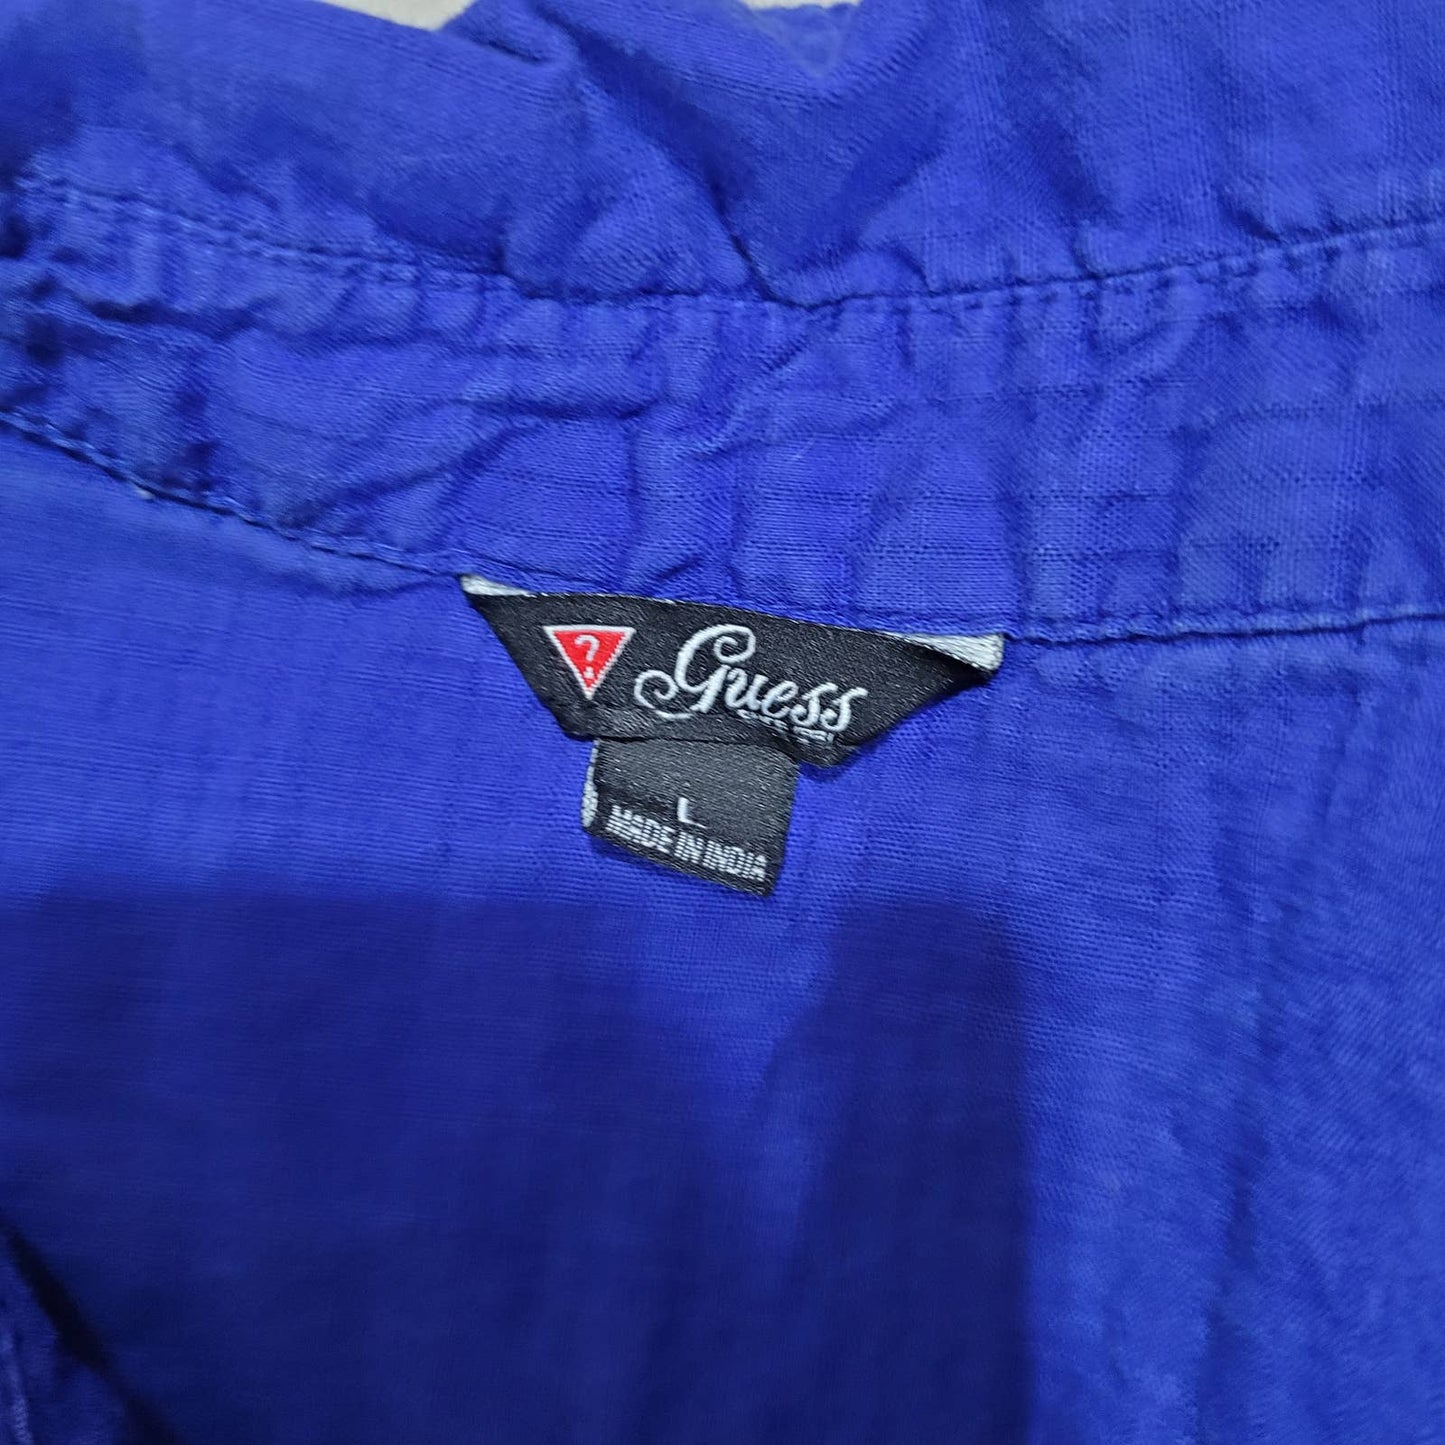 Guess Blue Button Up Collard Short Sleeve Shirt - Size Large